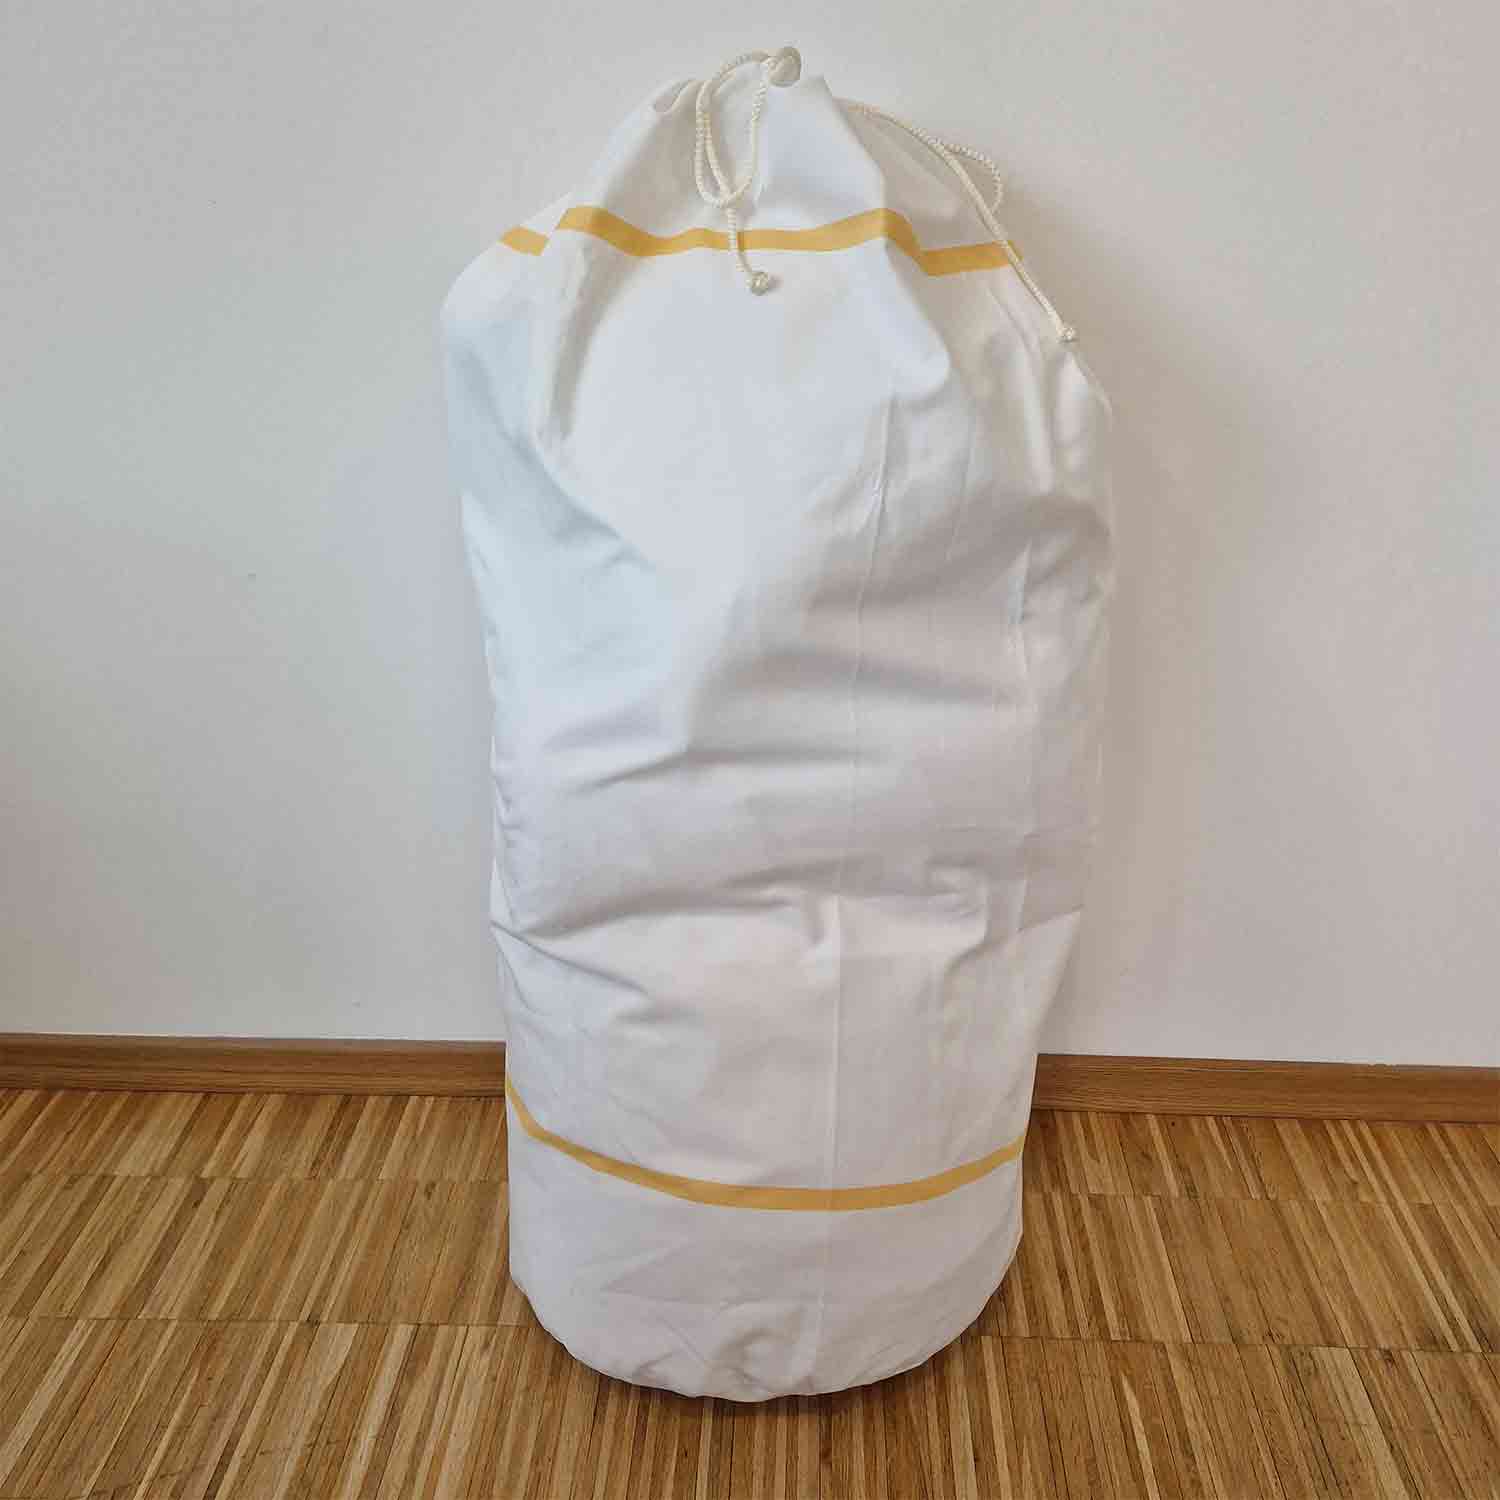 Wäschesack rund, Volumen ca. 15 kg 39,5 cm Durchmesser, 100 cm lang 11-vollfarbig gelb